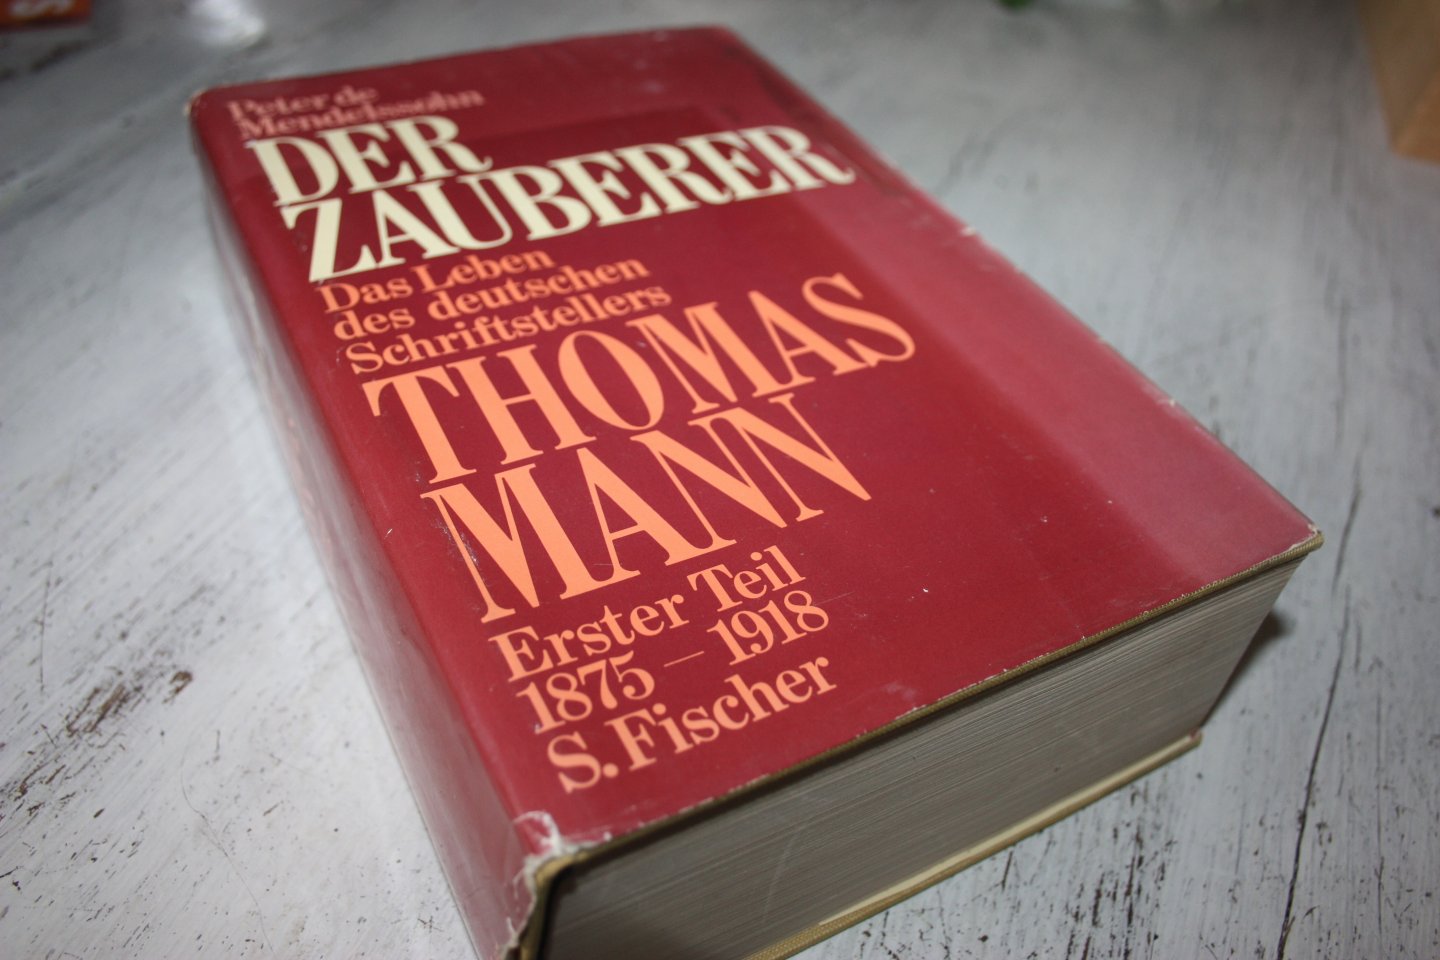 Mendelssohn, Peter de - DER ZAUBERER das Leben des deutschen Schriftstellers THOMAS MANN